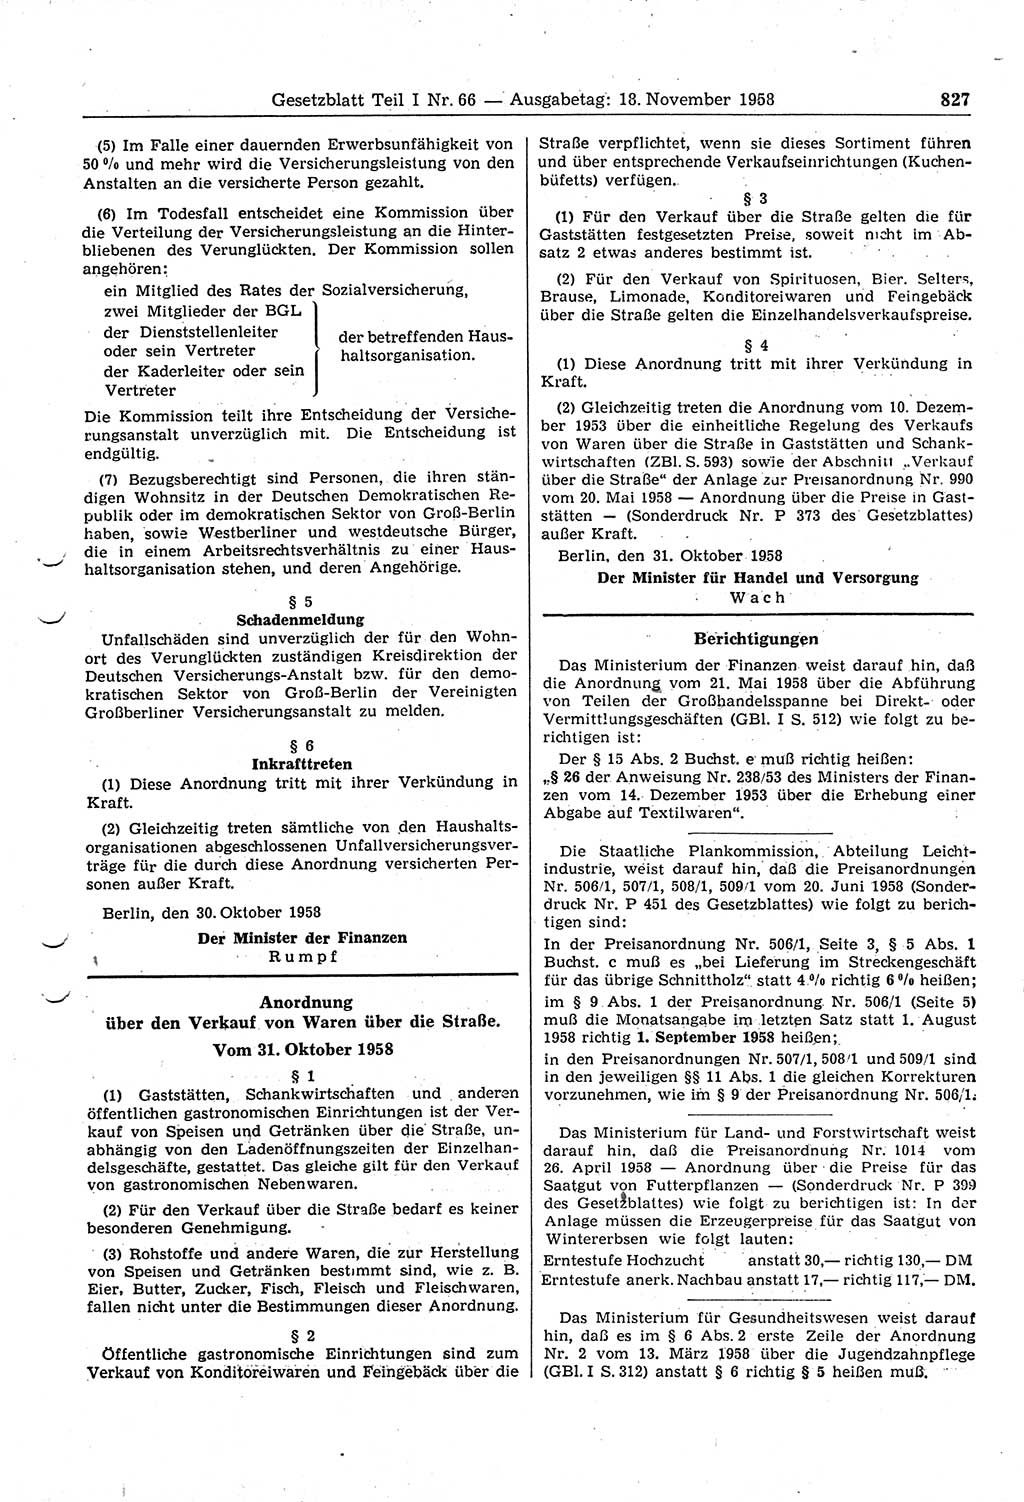 Gesetzblatt (GBl.) der Deutschen Demokratischen Republik (DDR) Teil Ⅰ 1958, Seite 827 (GBl. DDR Ⅰ 1958, S. 827)